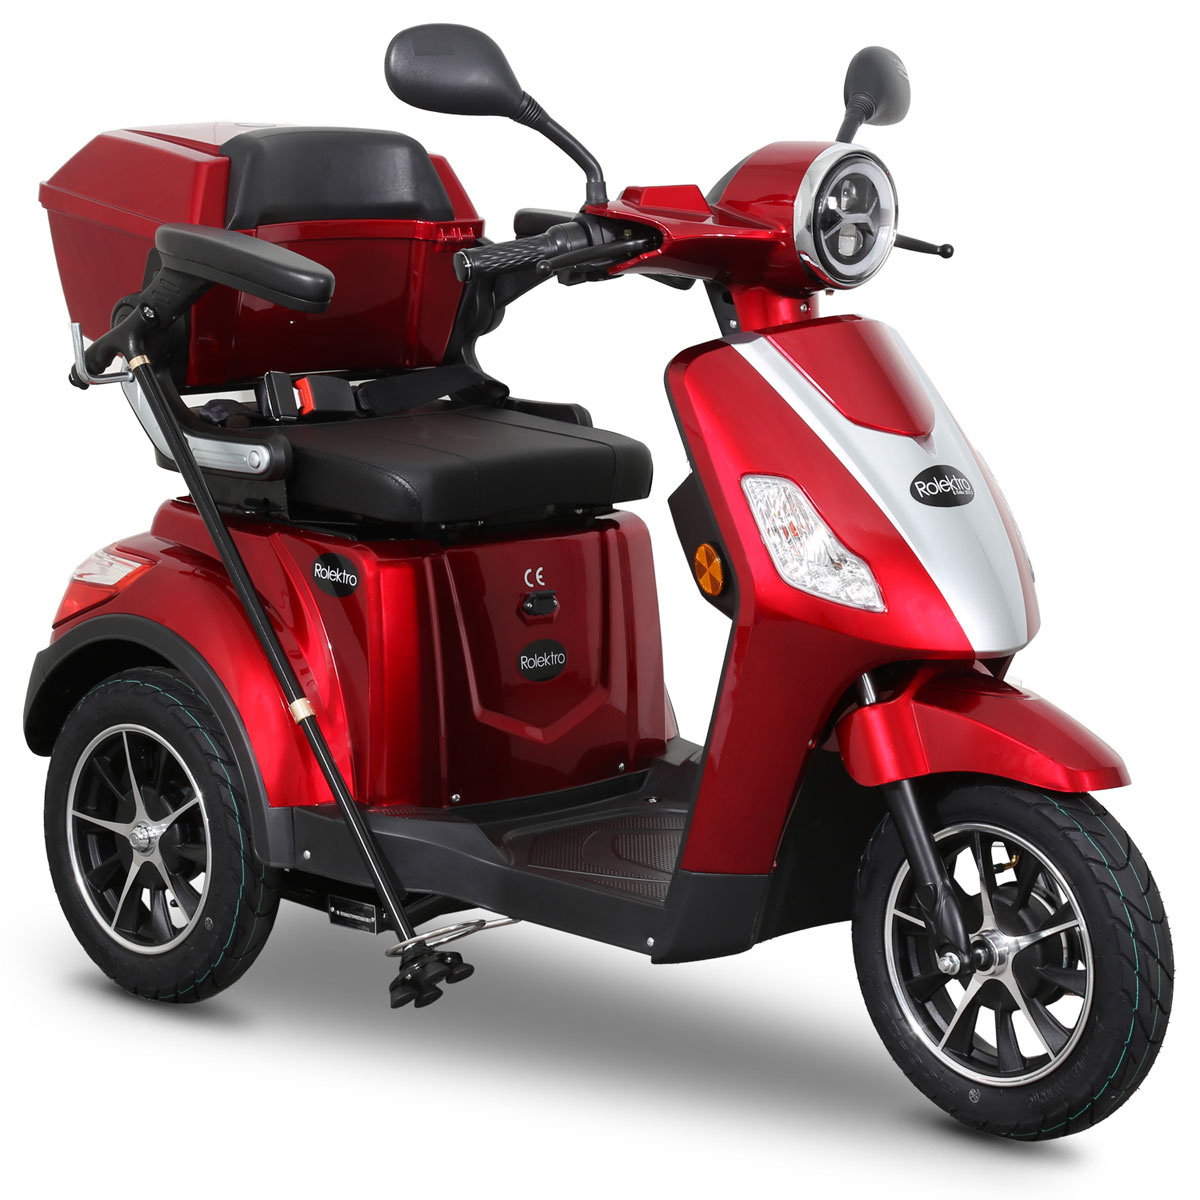 | Akkus Rot Bleigel 60V-20Ah 15 V.2 E-Trike Seniorenmobil Elektroroller Rolektro 1000W K011391488